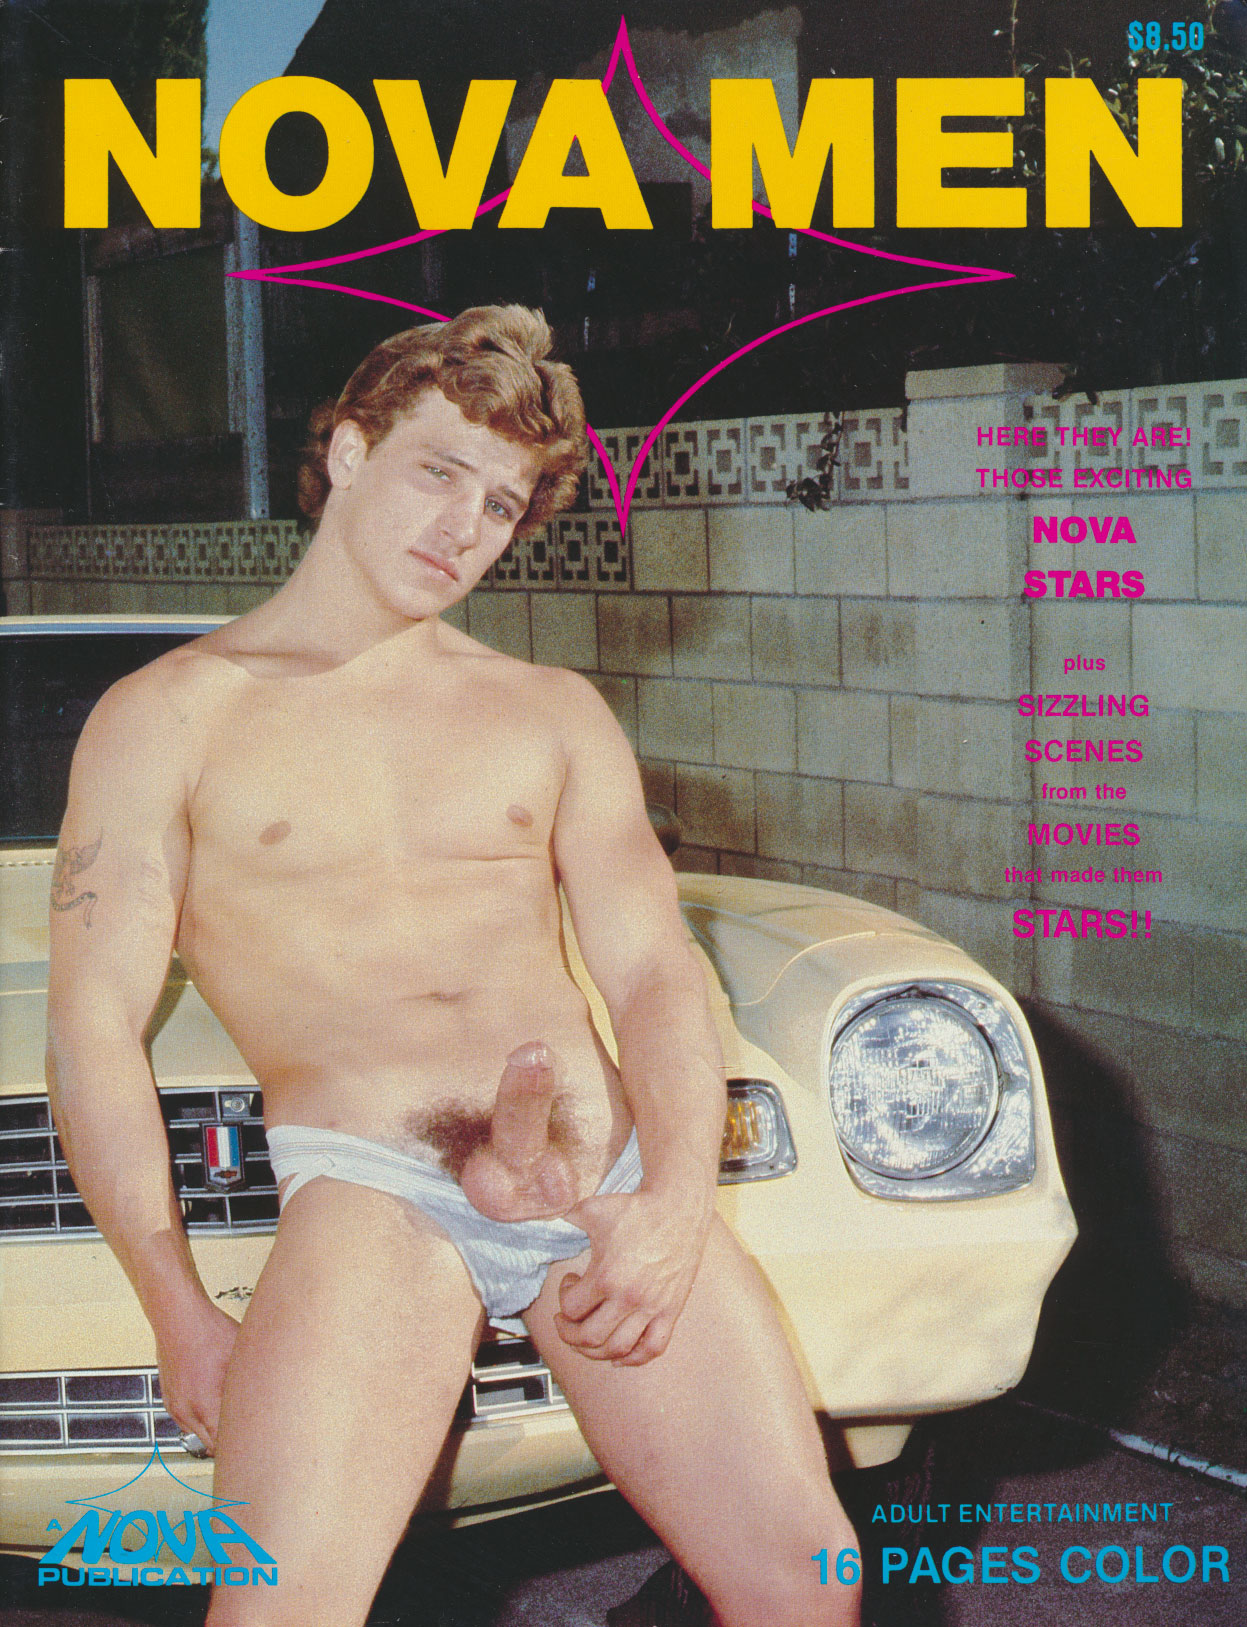 Nova Men # 1 magazine reviews